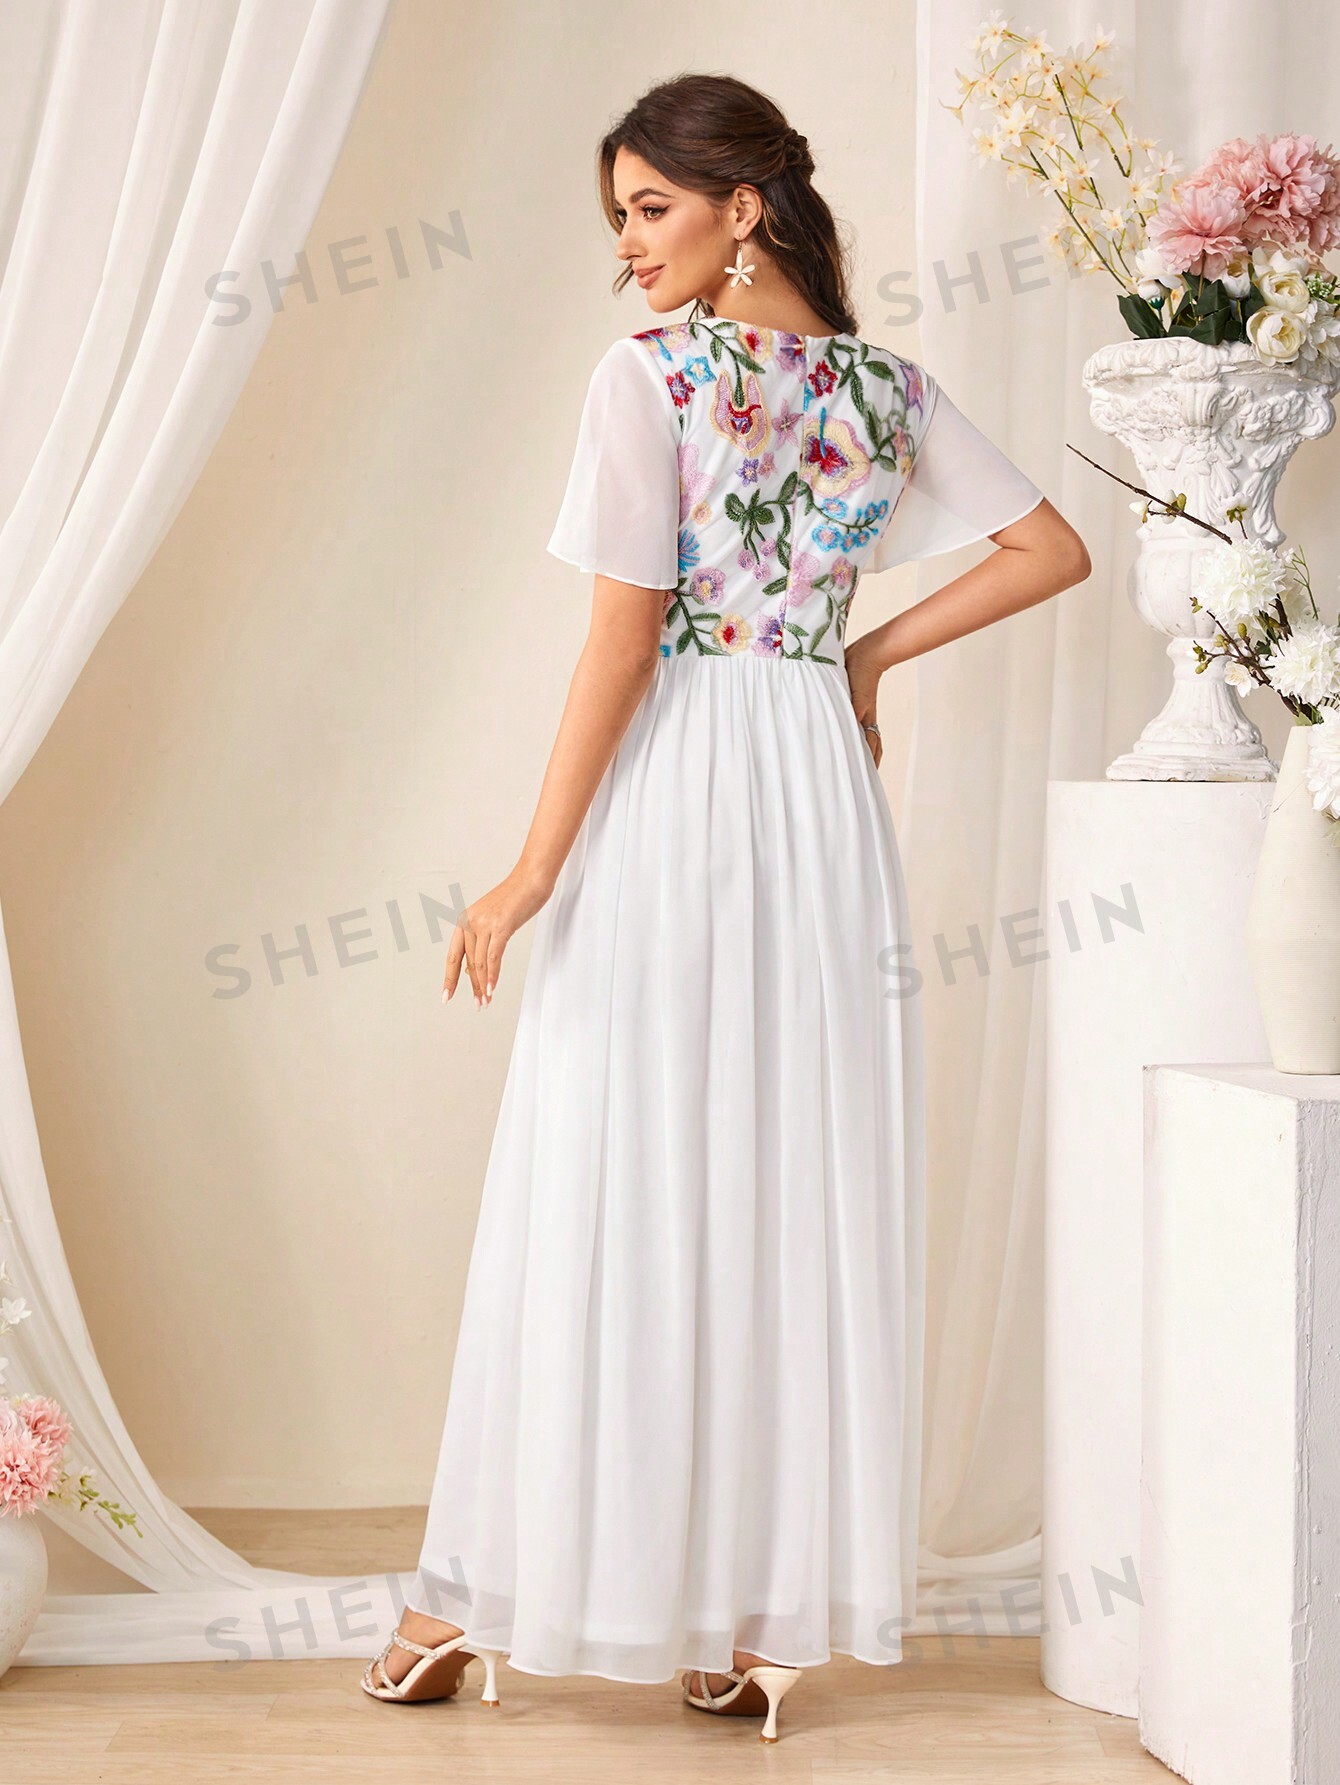 женское длинное вечернее платье шифоновое плиссированное платье до щиколотки для выпускного вечера в стиле саудовской аравии SHEIN Belle женское элегантное шифоновое платье для подружки невесты с вышивкой, белый